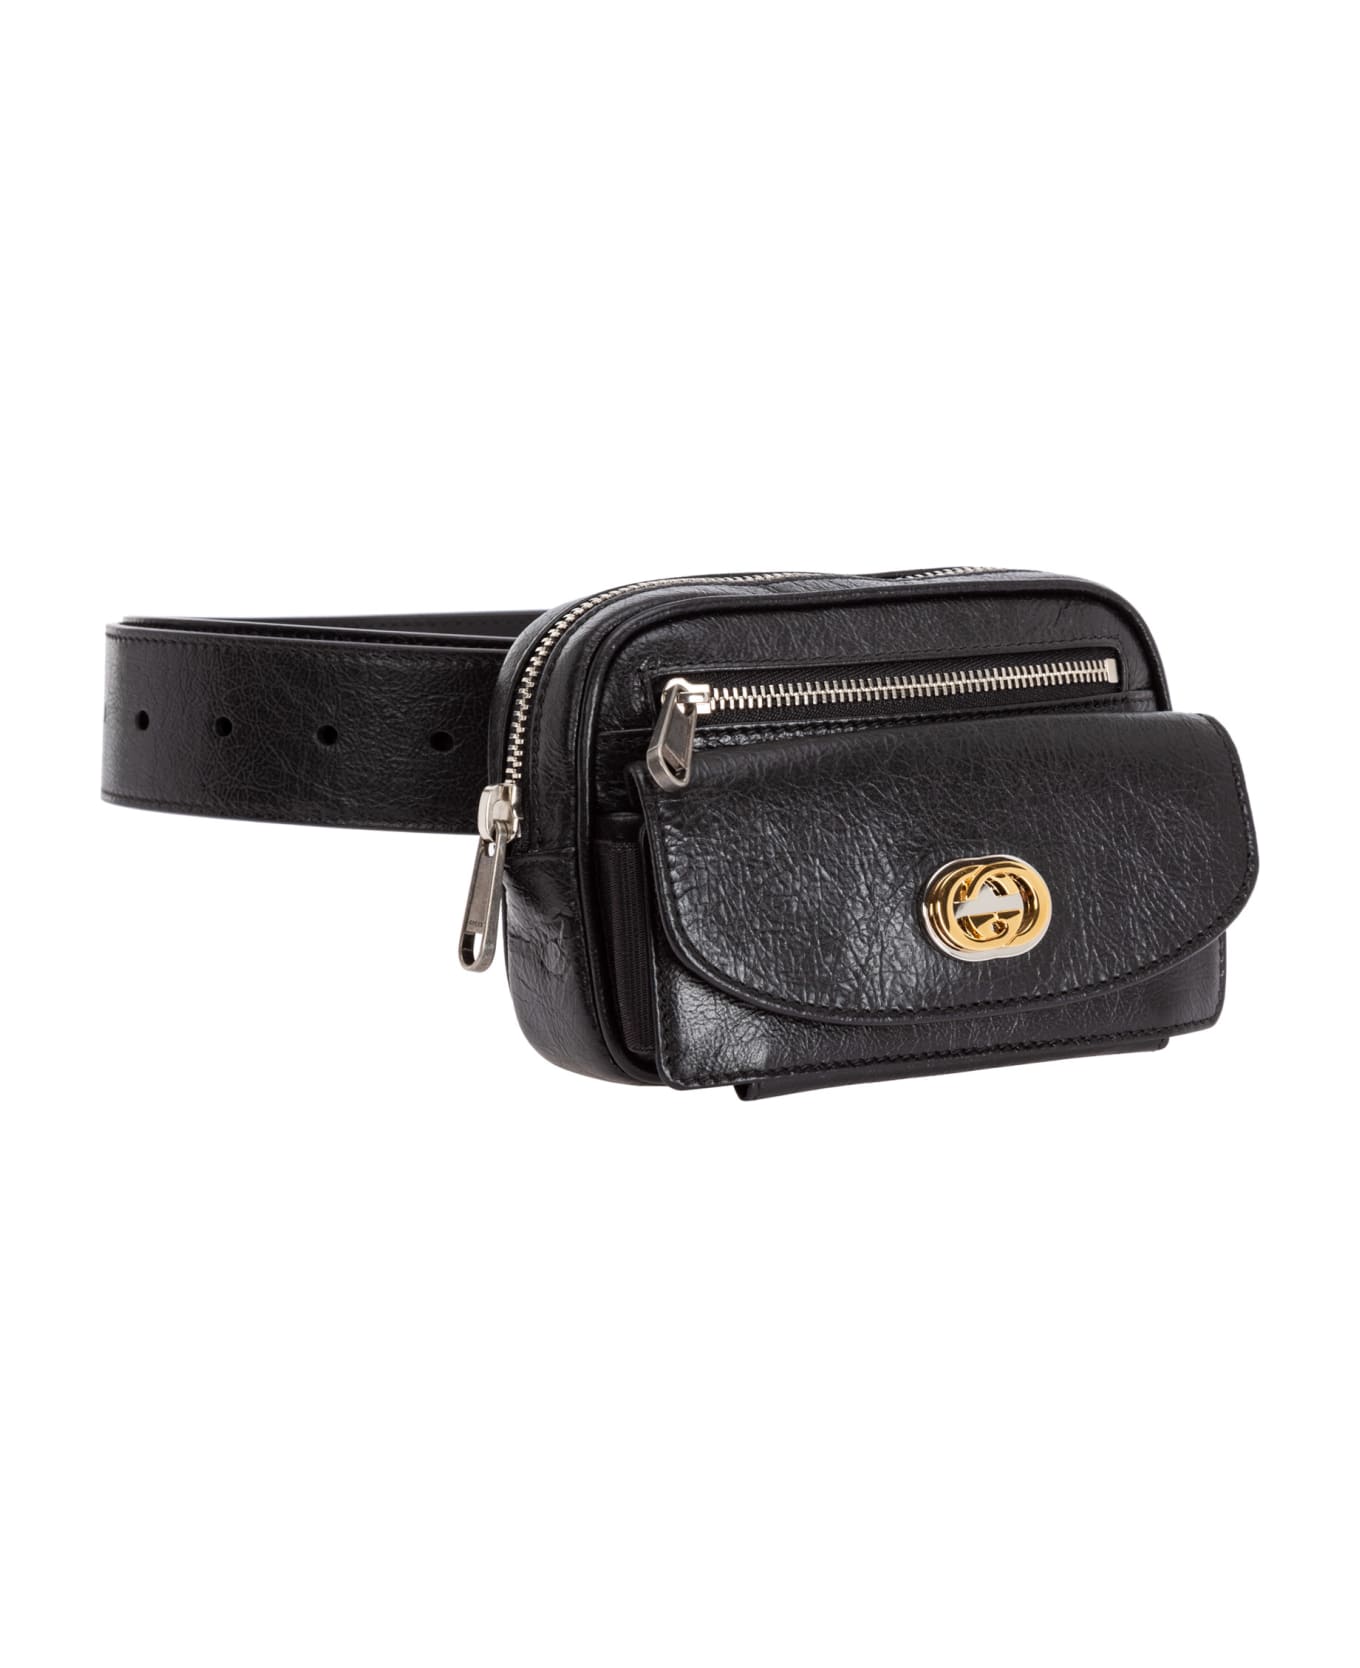 Gucci Leather Belt Bag - Black